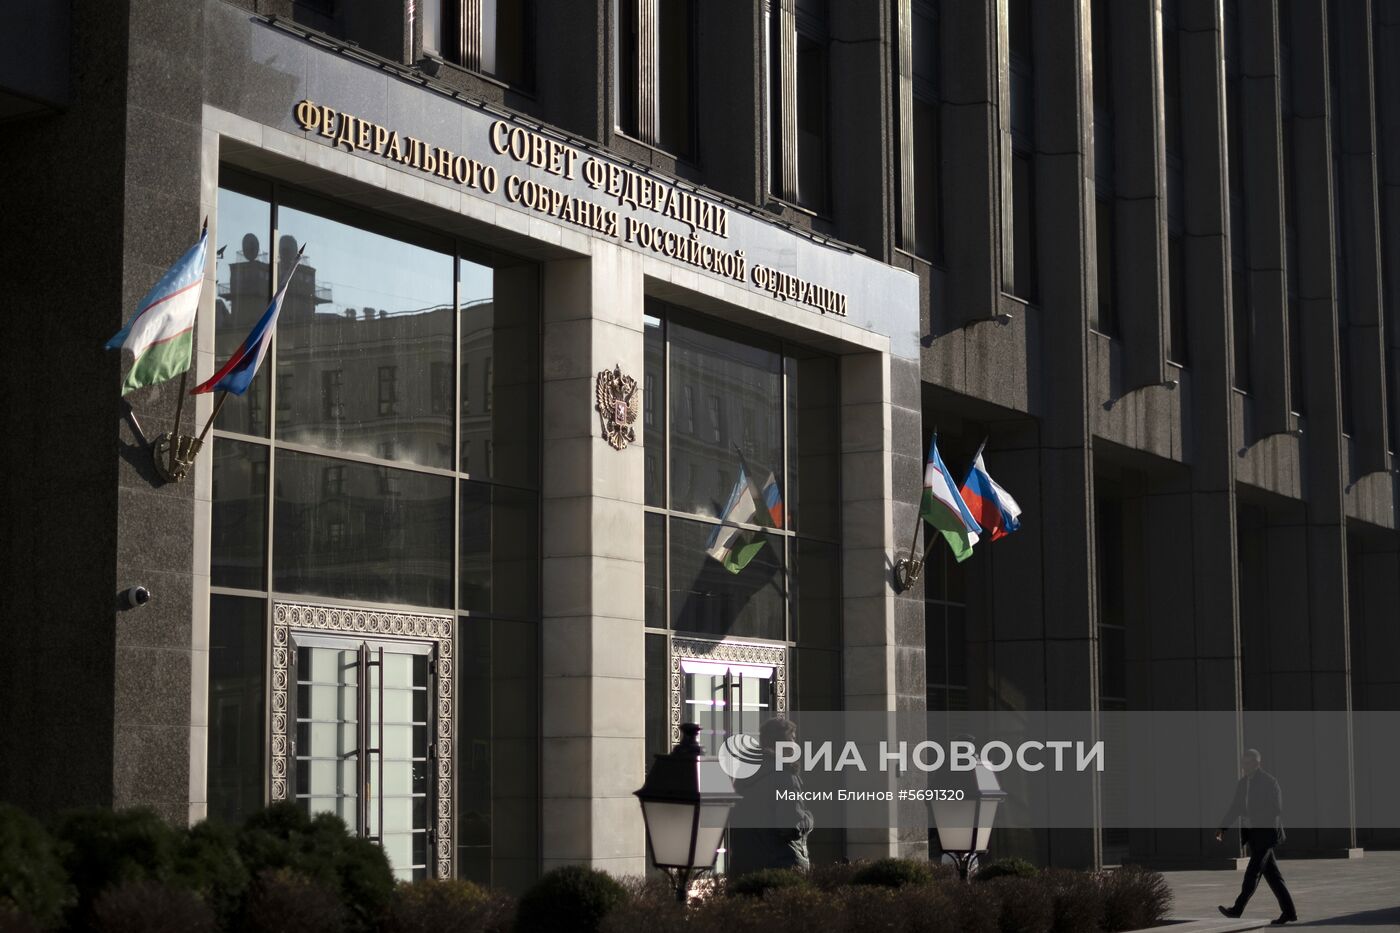 Здание Совета Федерации Федерального Собрания Российской Федерации